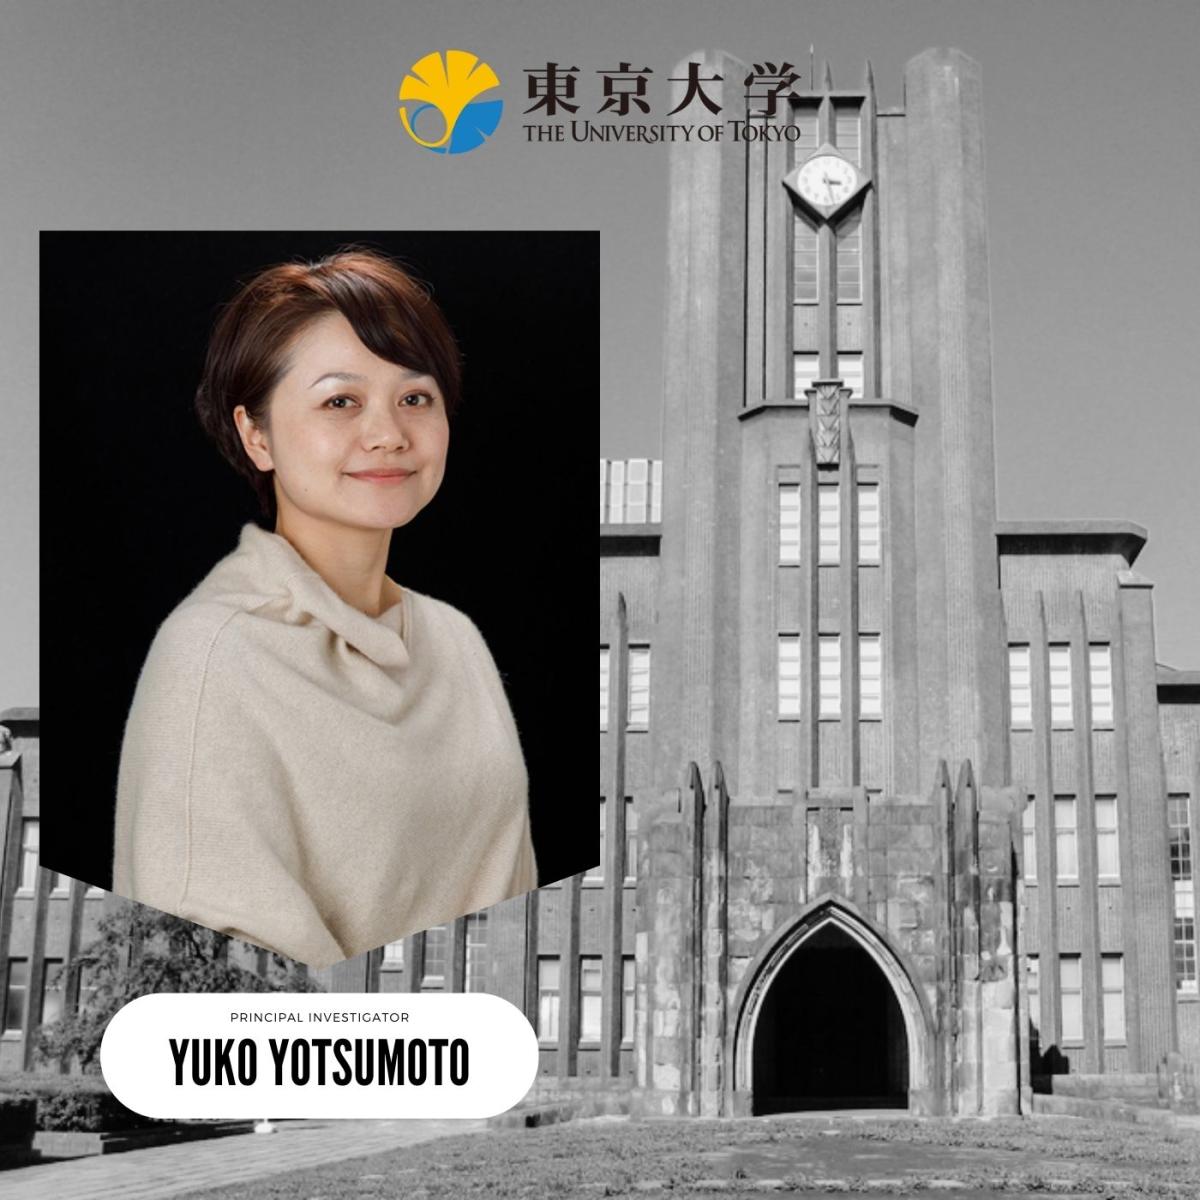 Yuko Yotsumoto